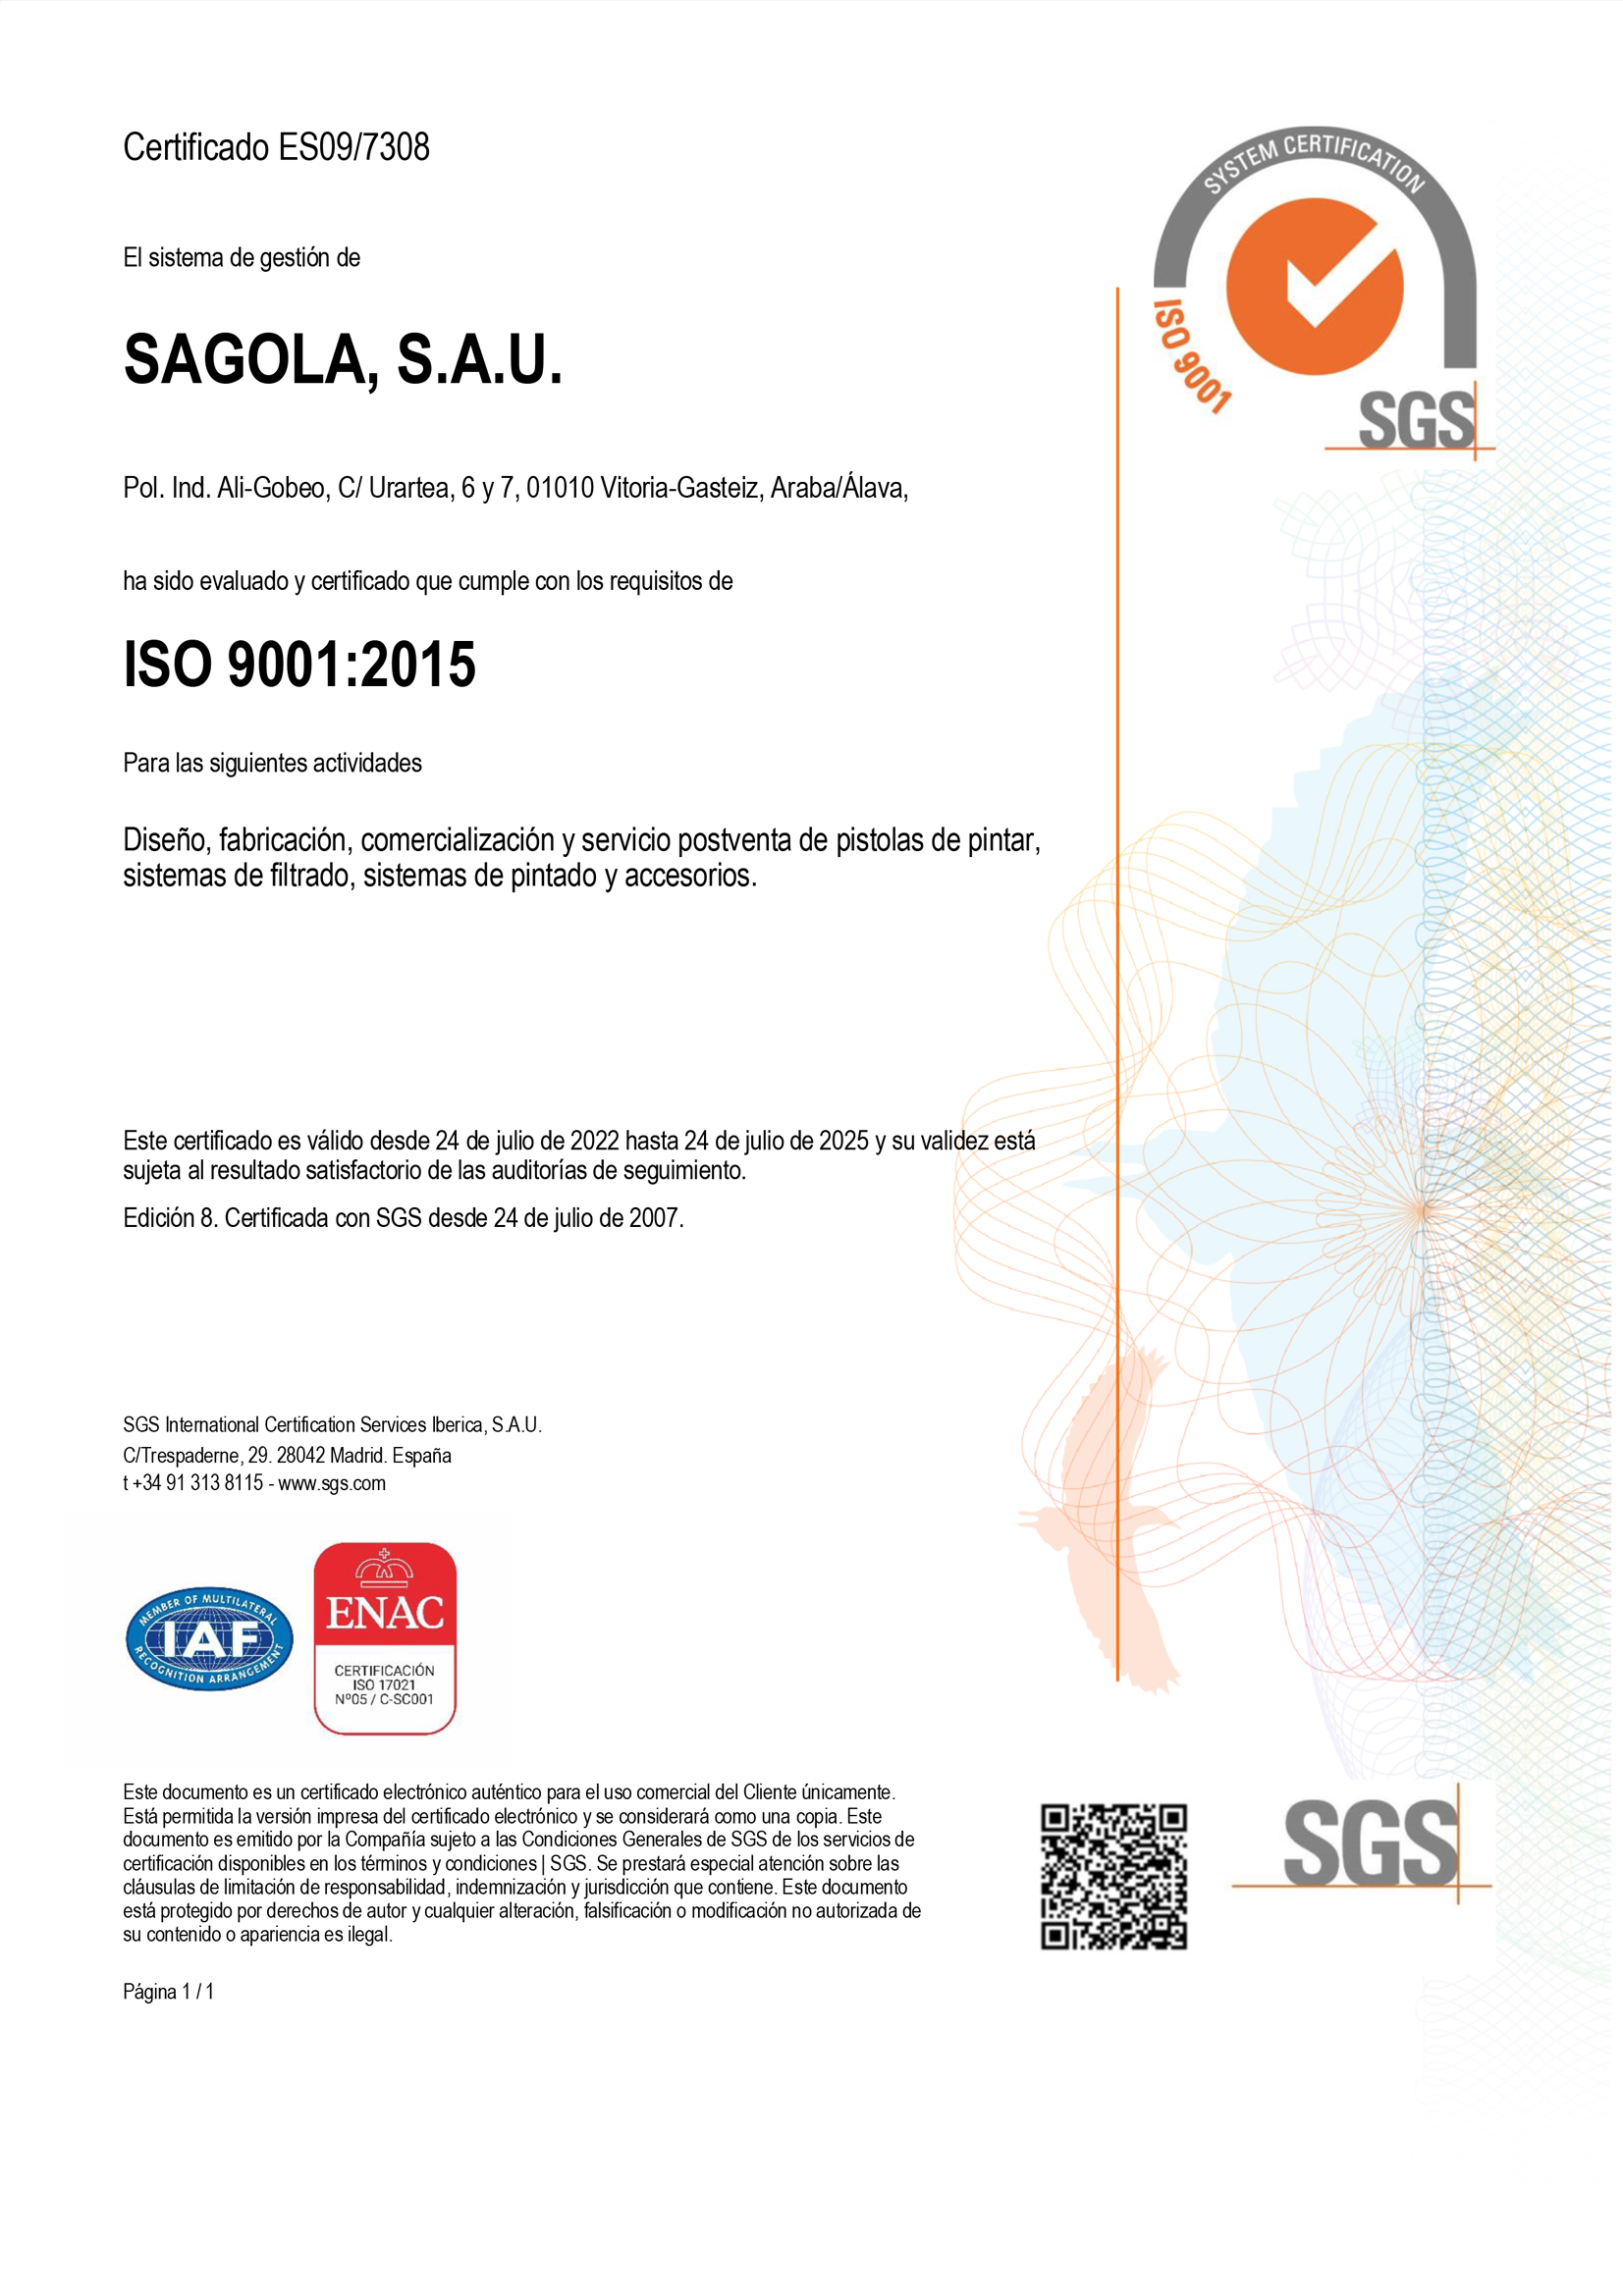 Document ISO 9001